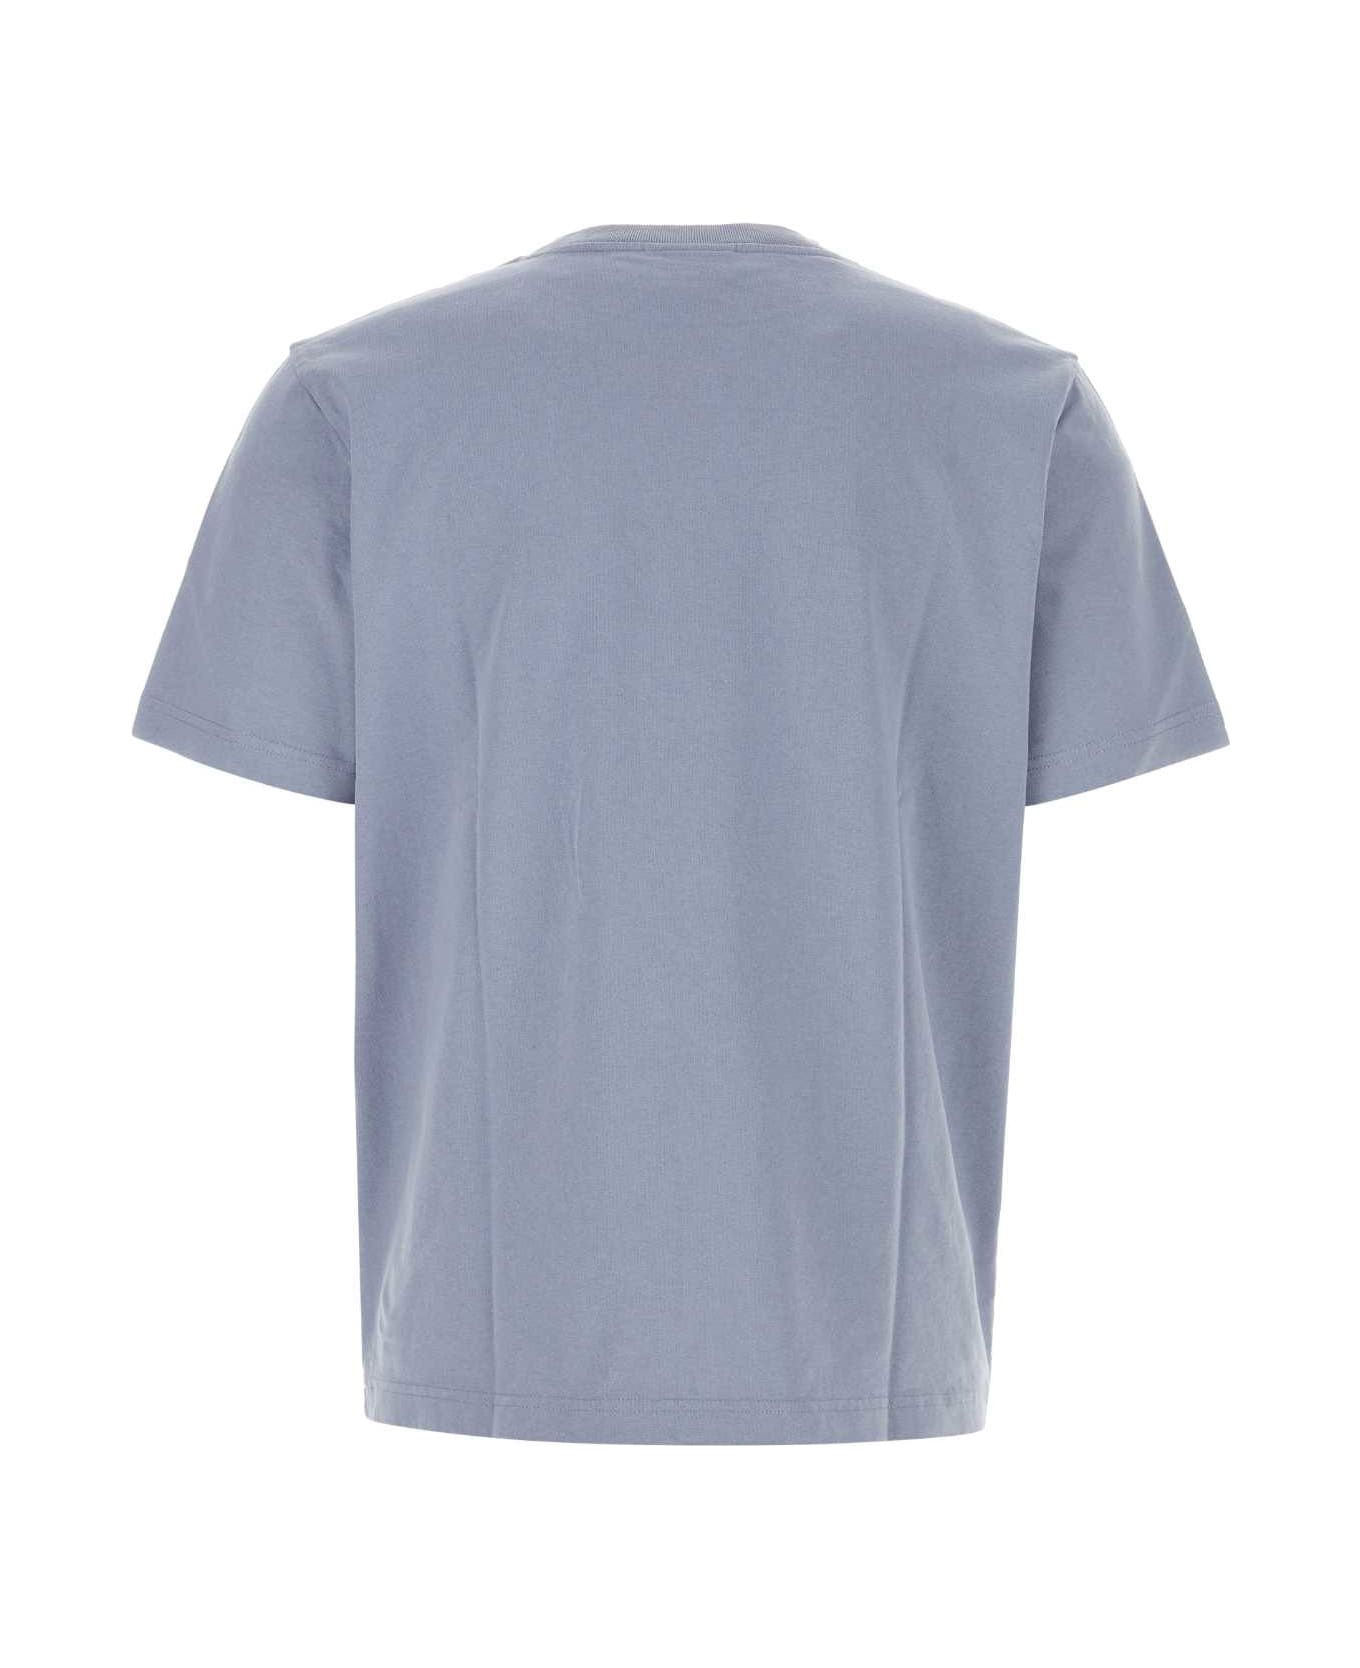 Maison Kitsuné Cerulean Blue Cotton T-shirt - DUSTERBLUE